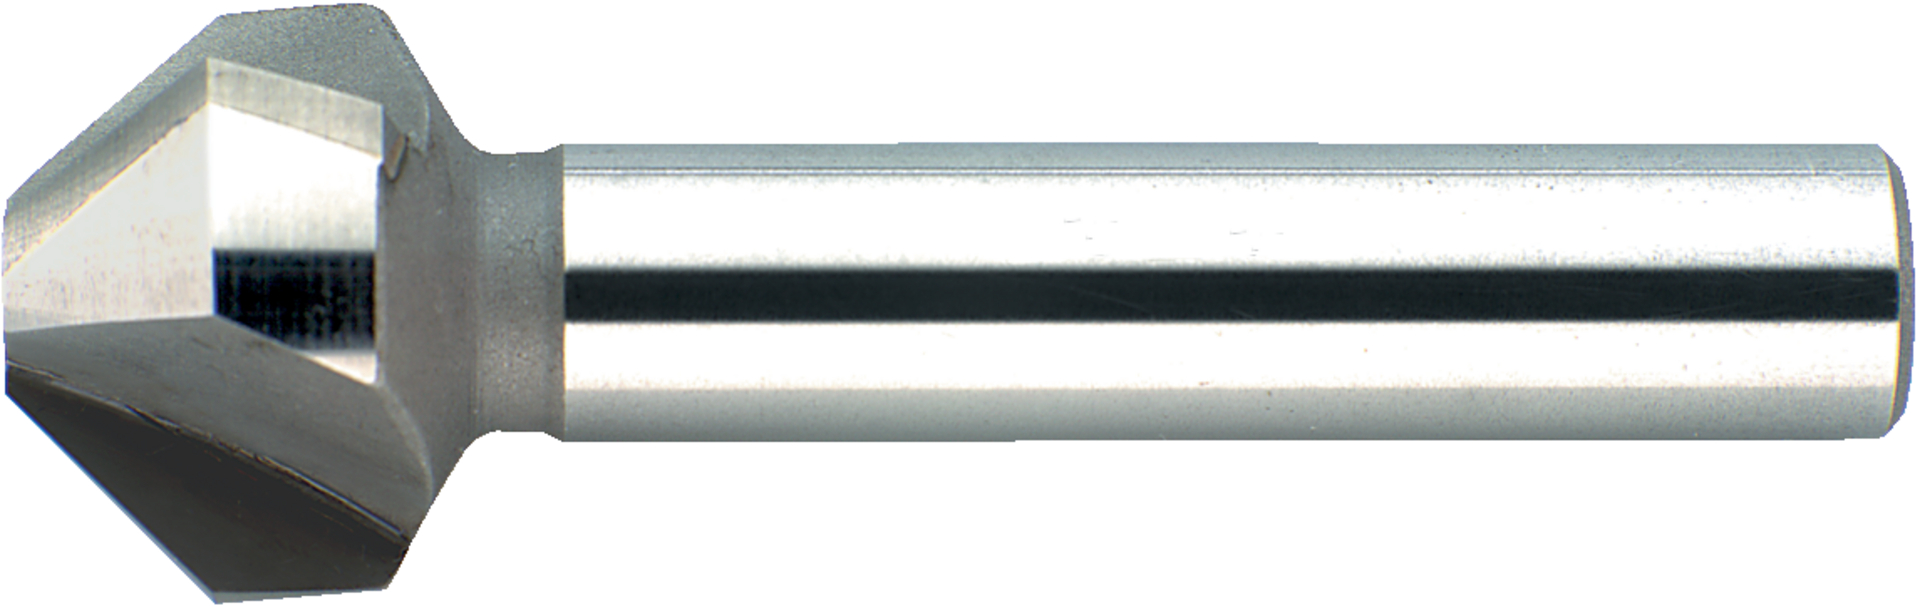 Kegelsenker D335C K20 90G 8,3mm FORMAT